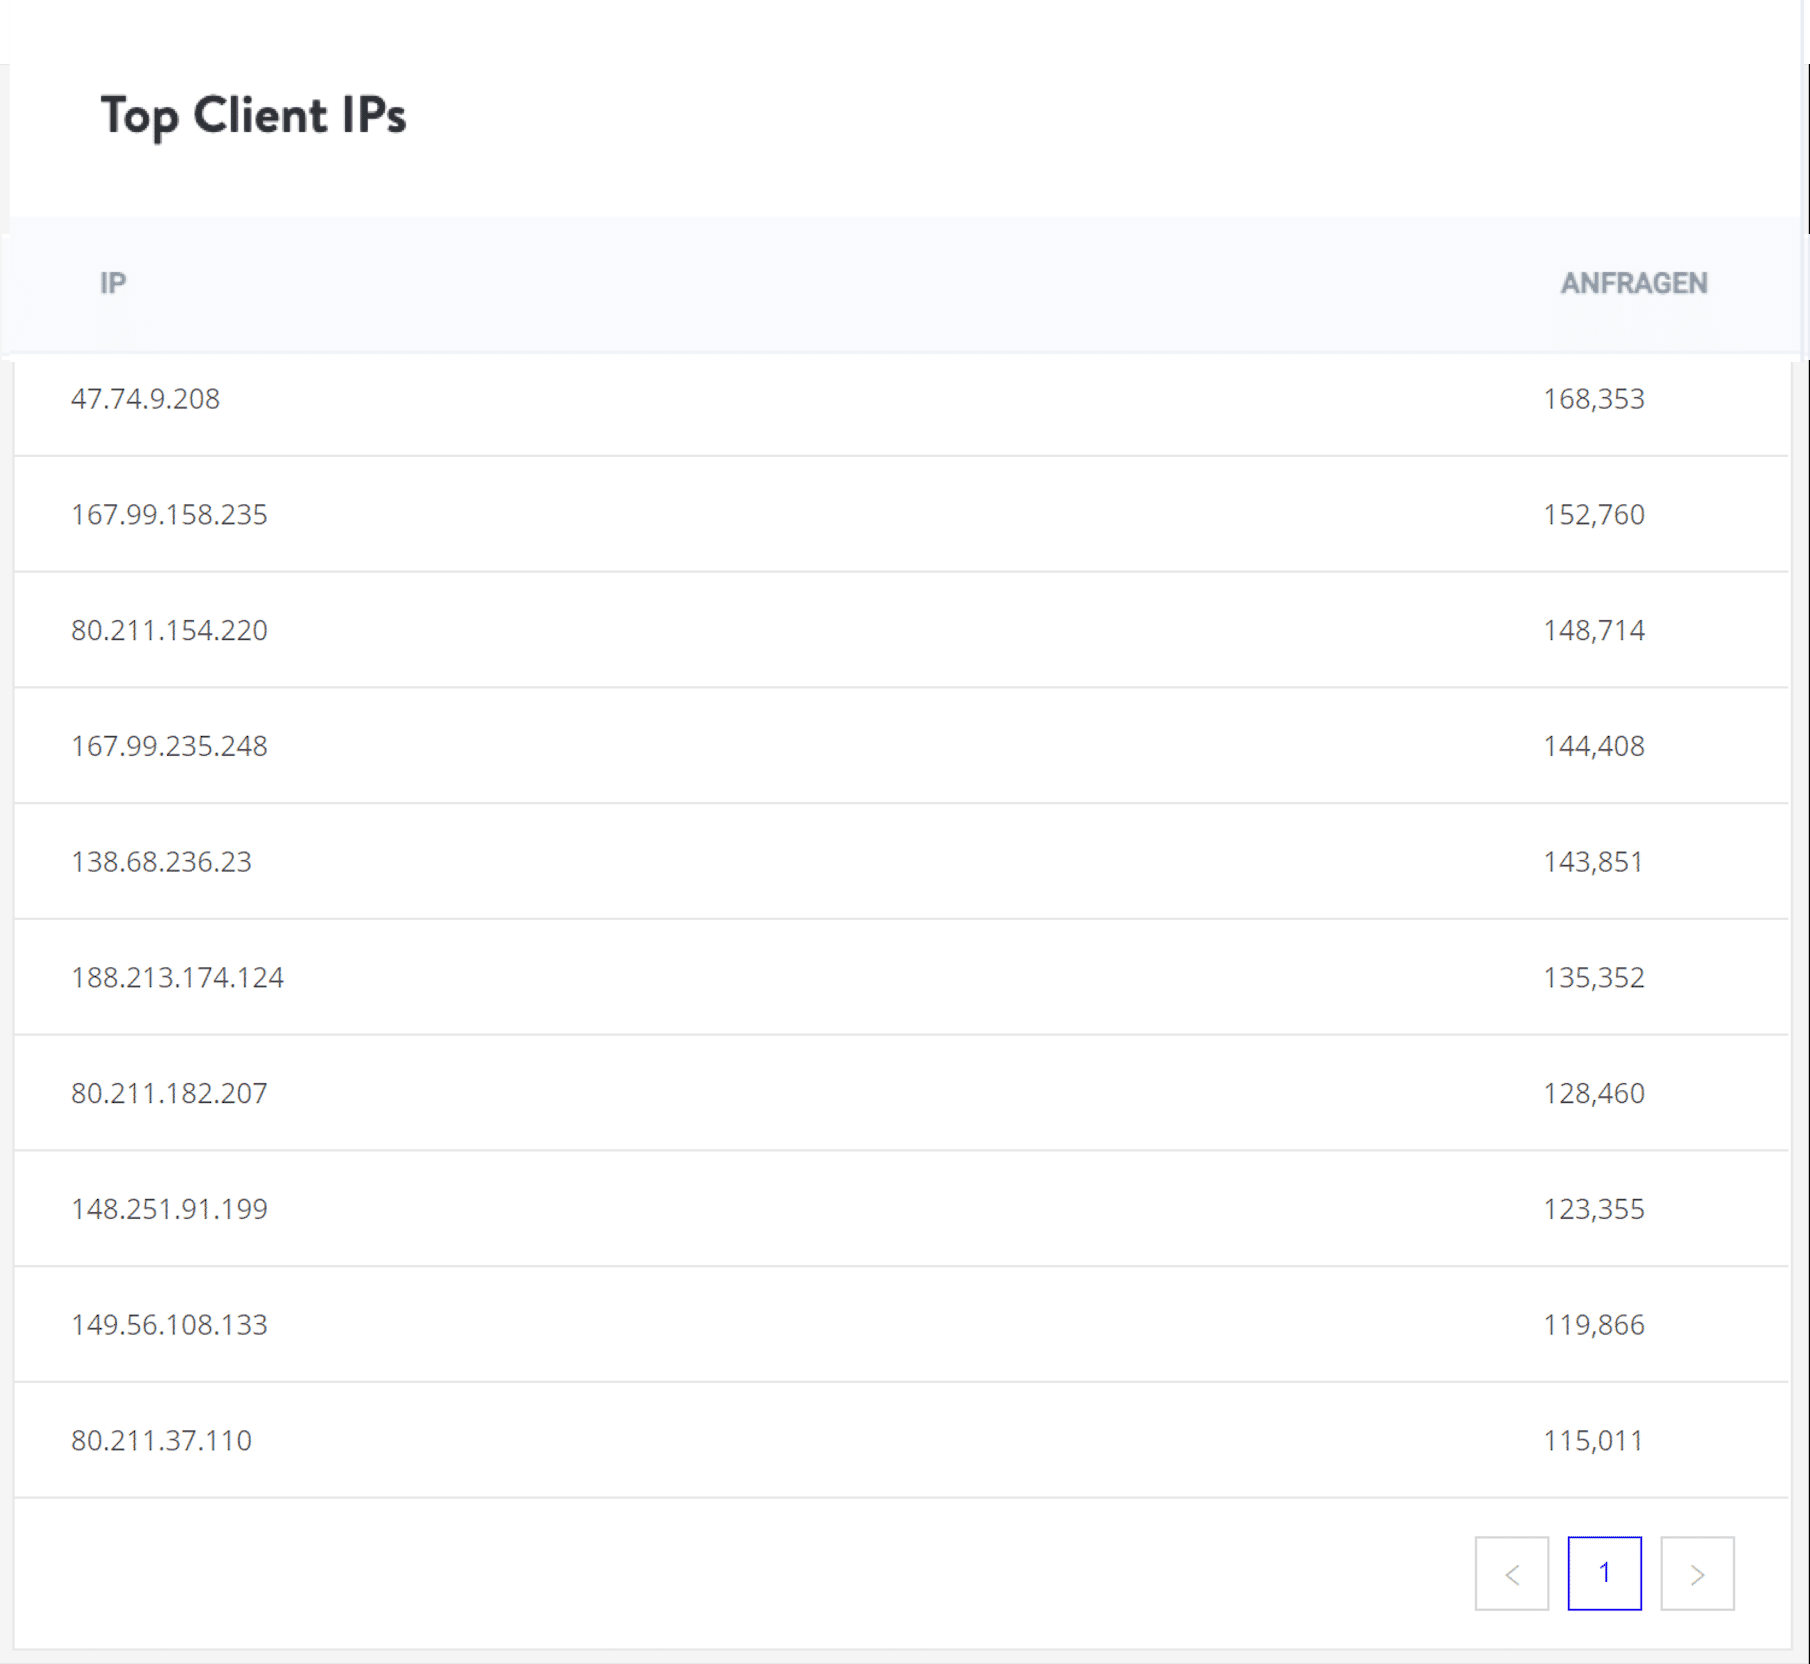 Top client IPs